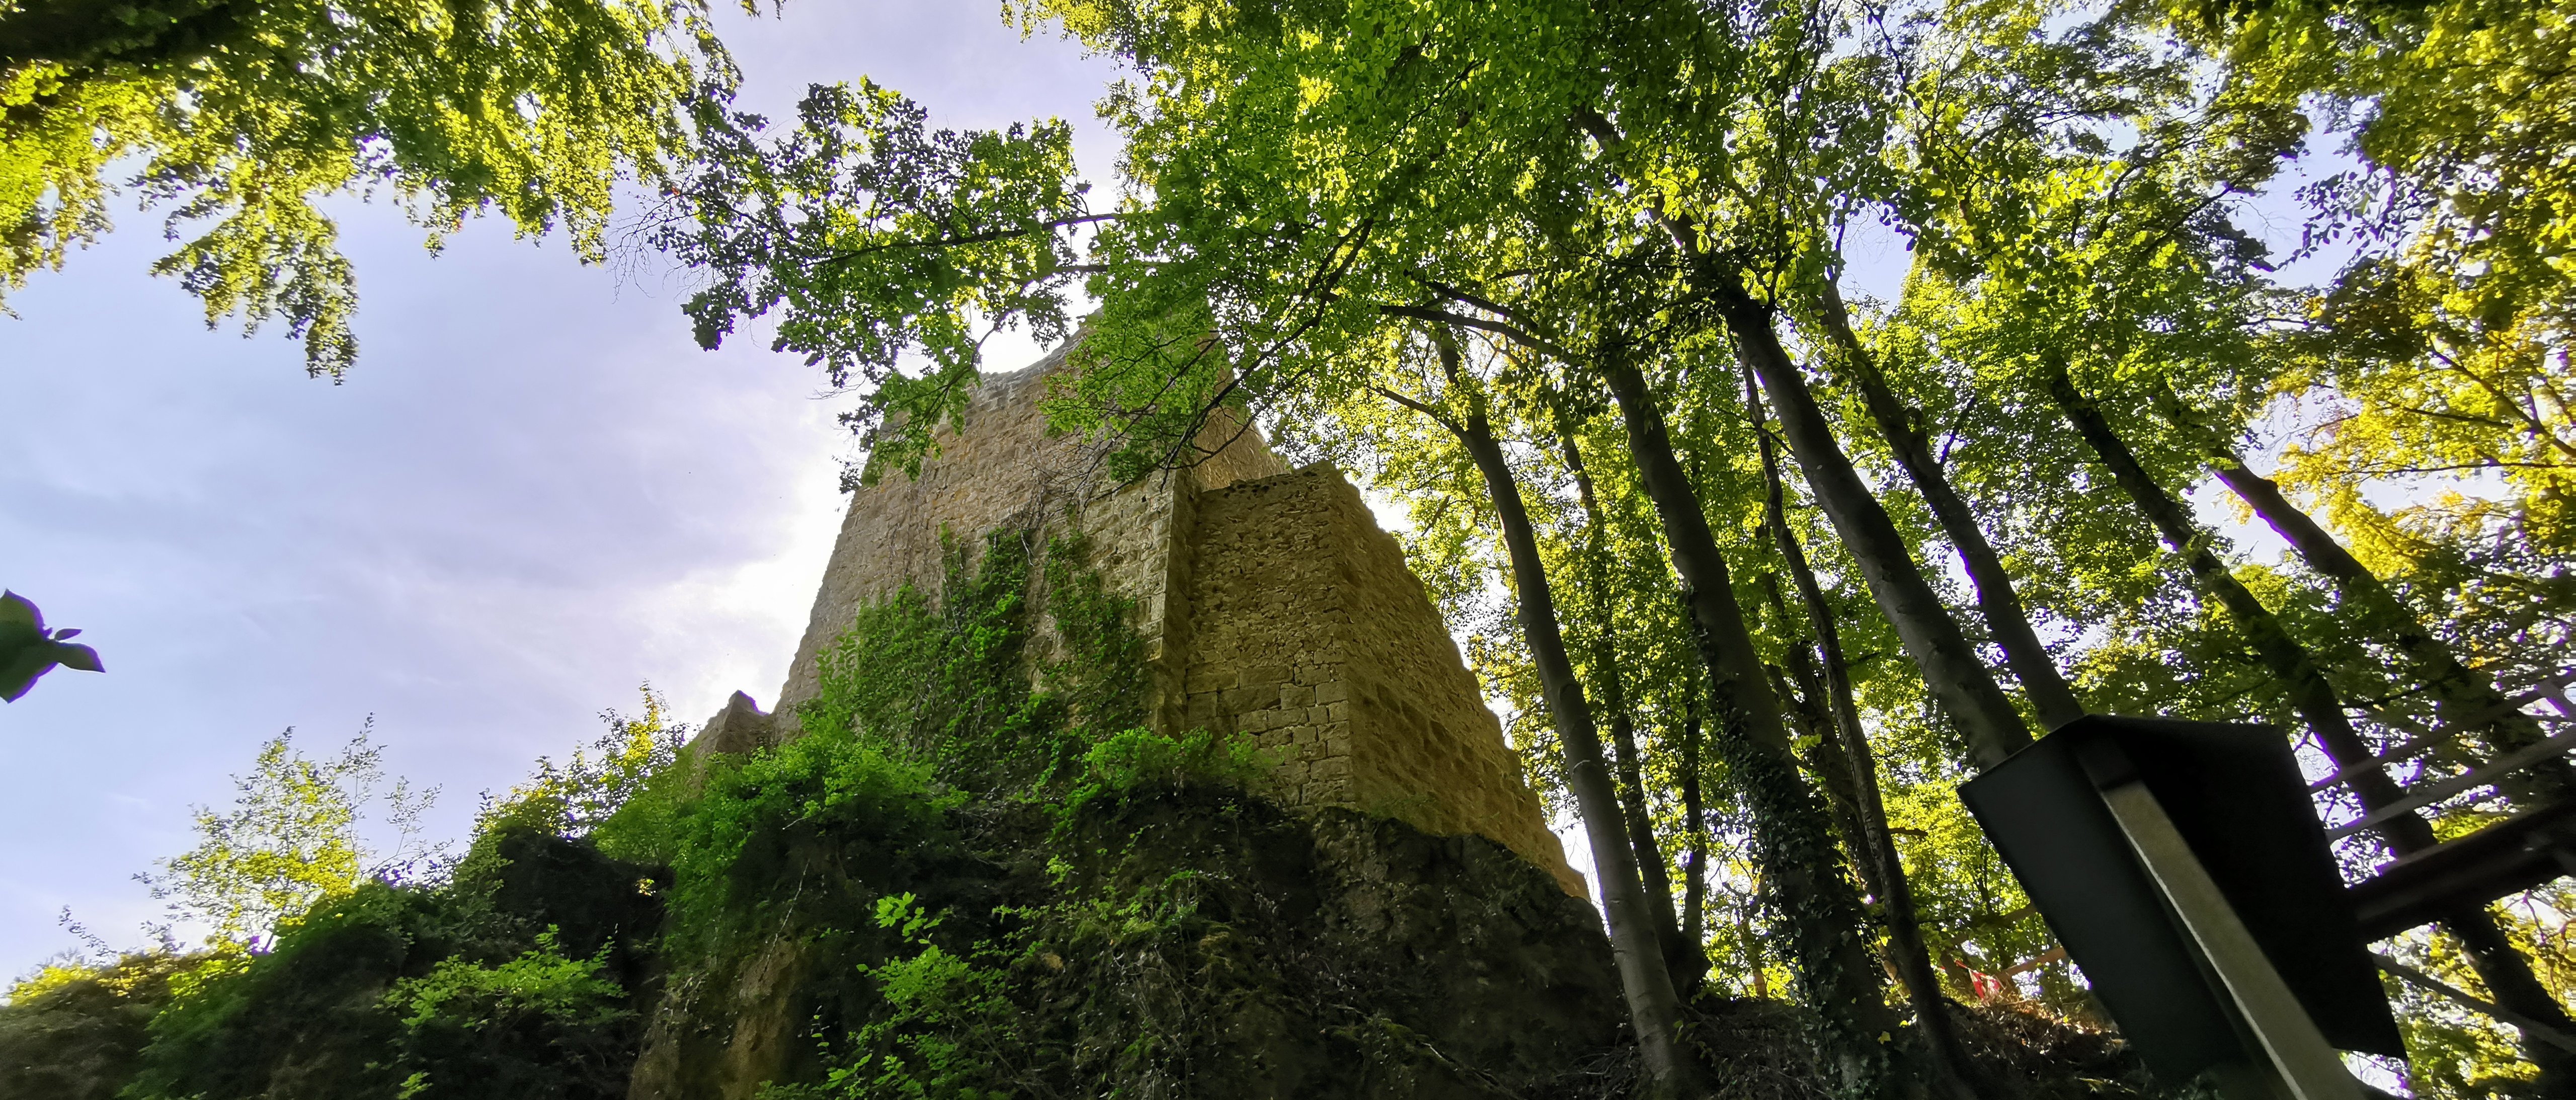 Ruine Tachenstein